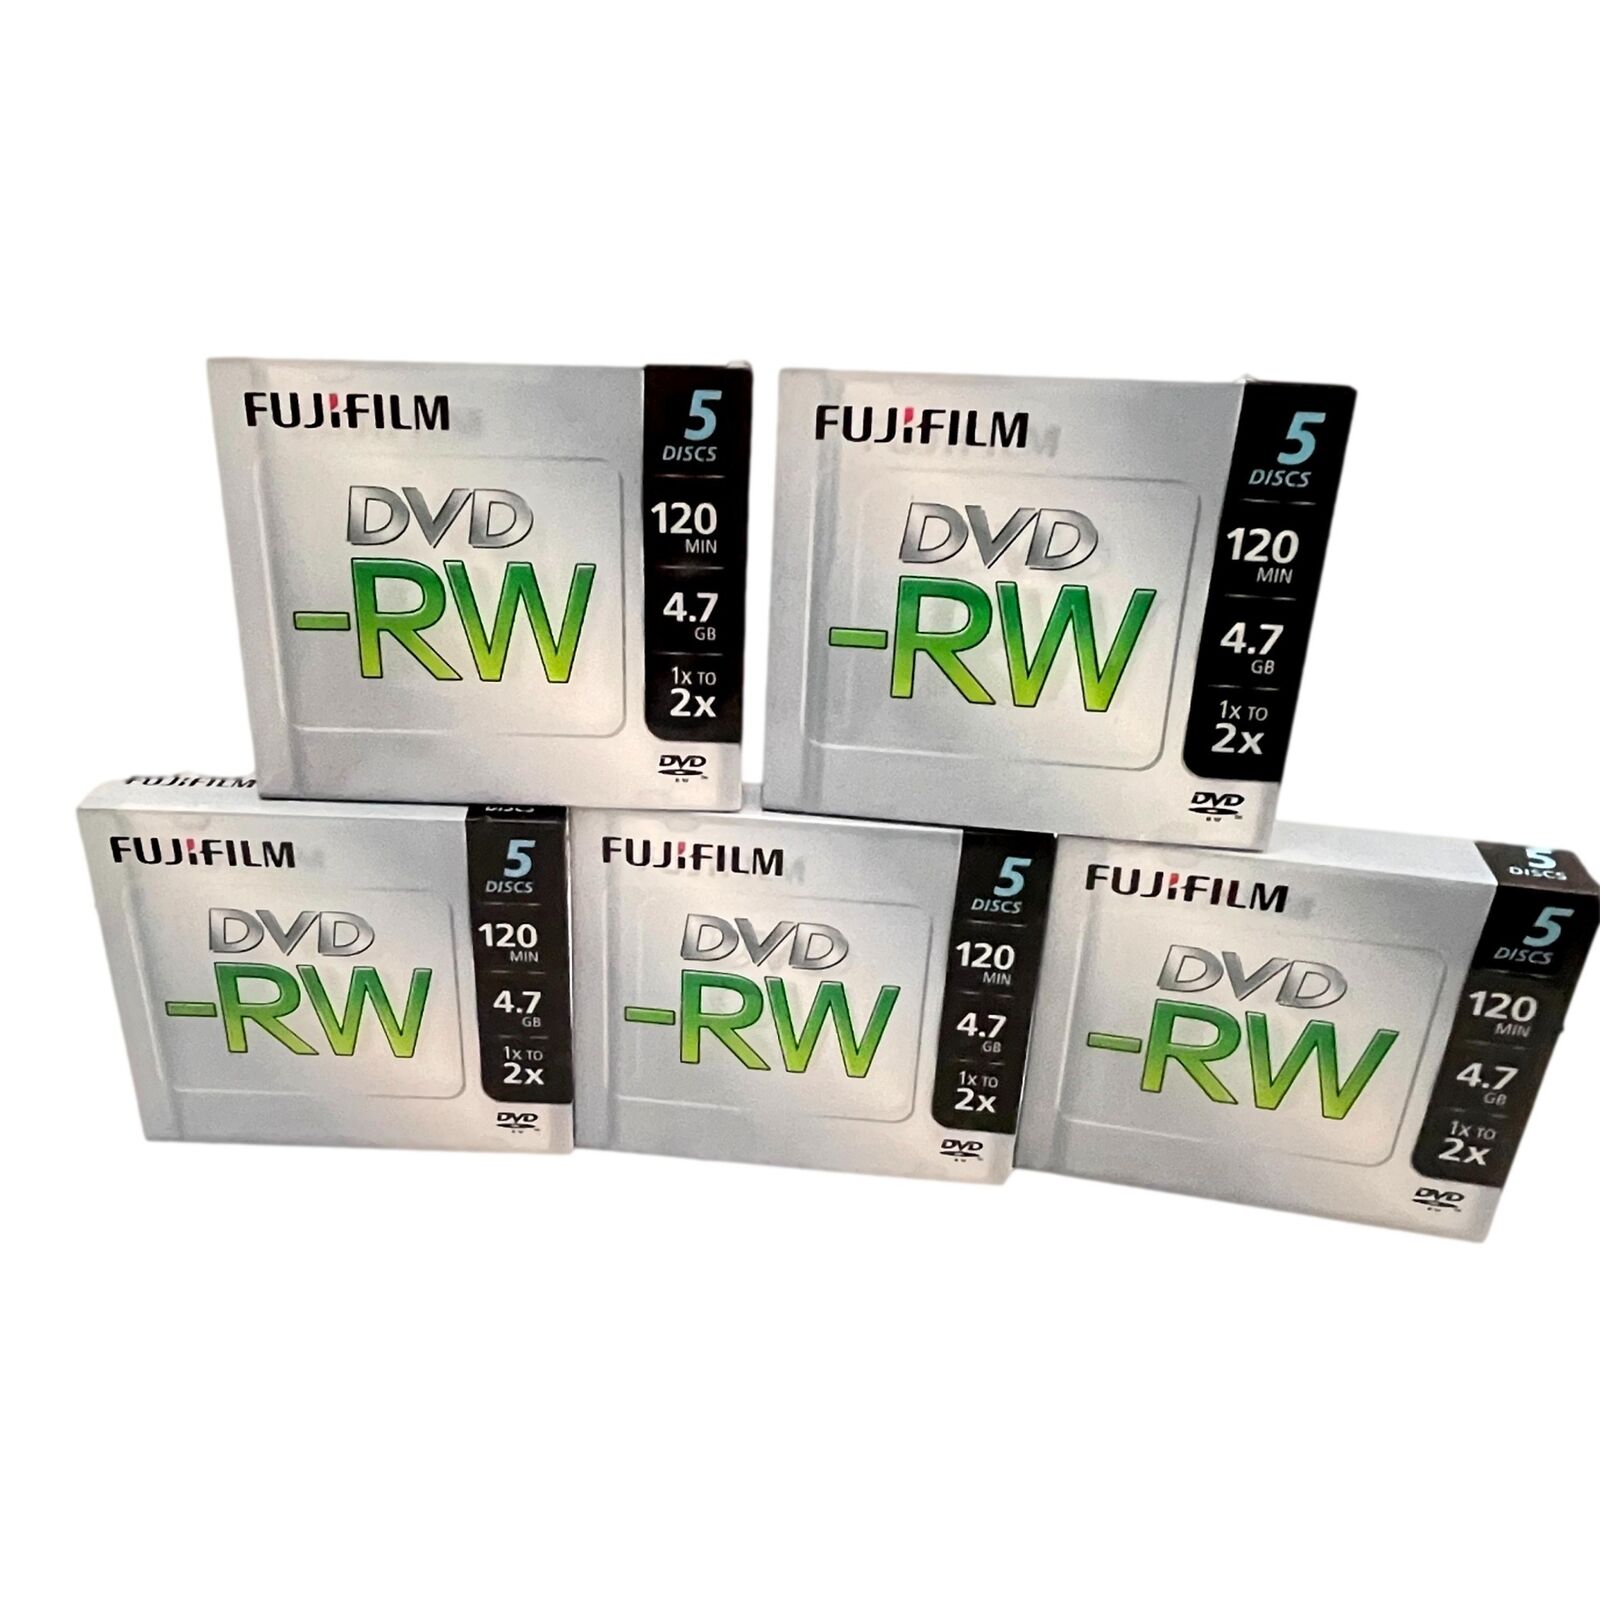 Fuji DVD -RW Lot 5 Pack 5 per Pak w Jewel Cases Fujifilm Discs 120 Min 4.7G New